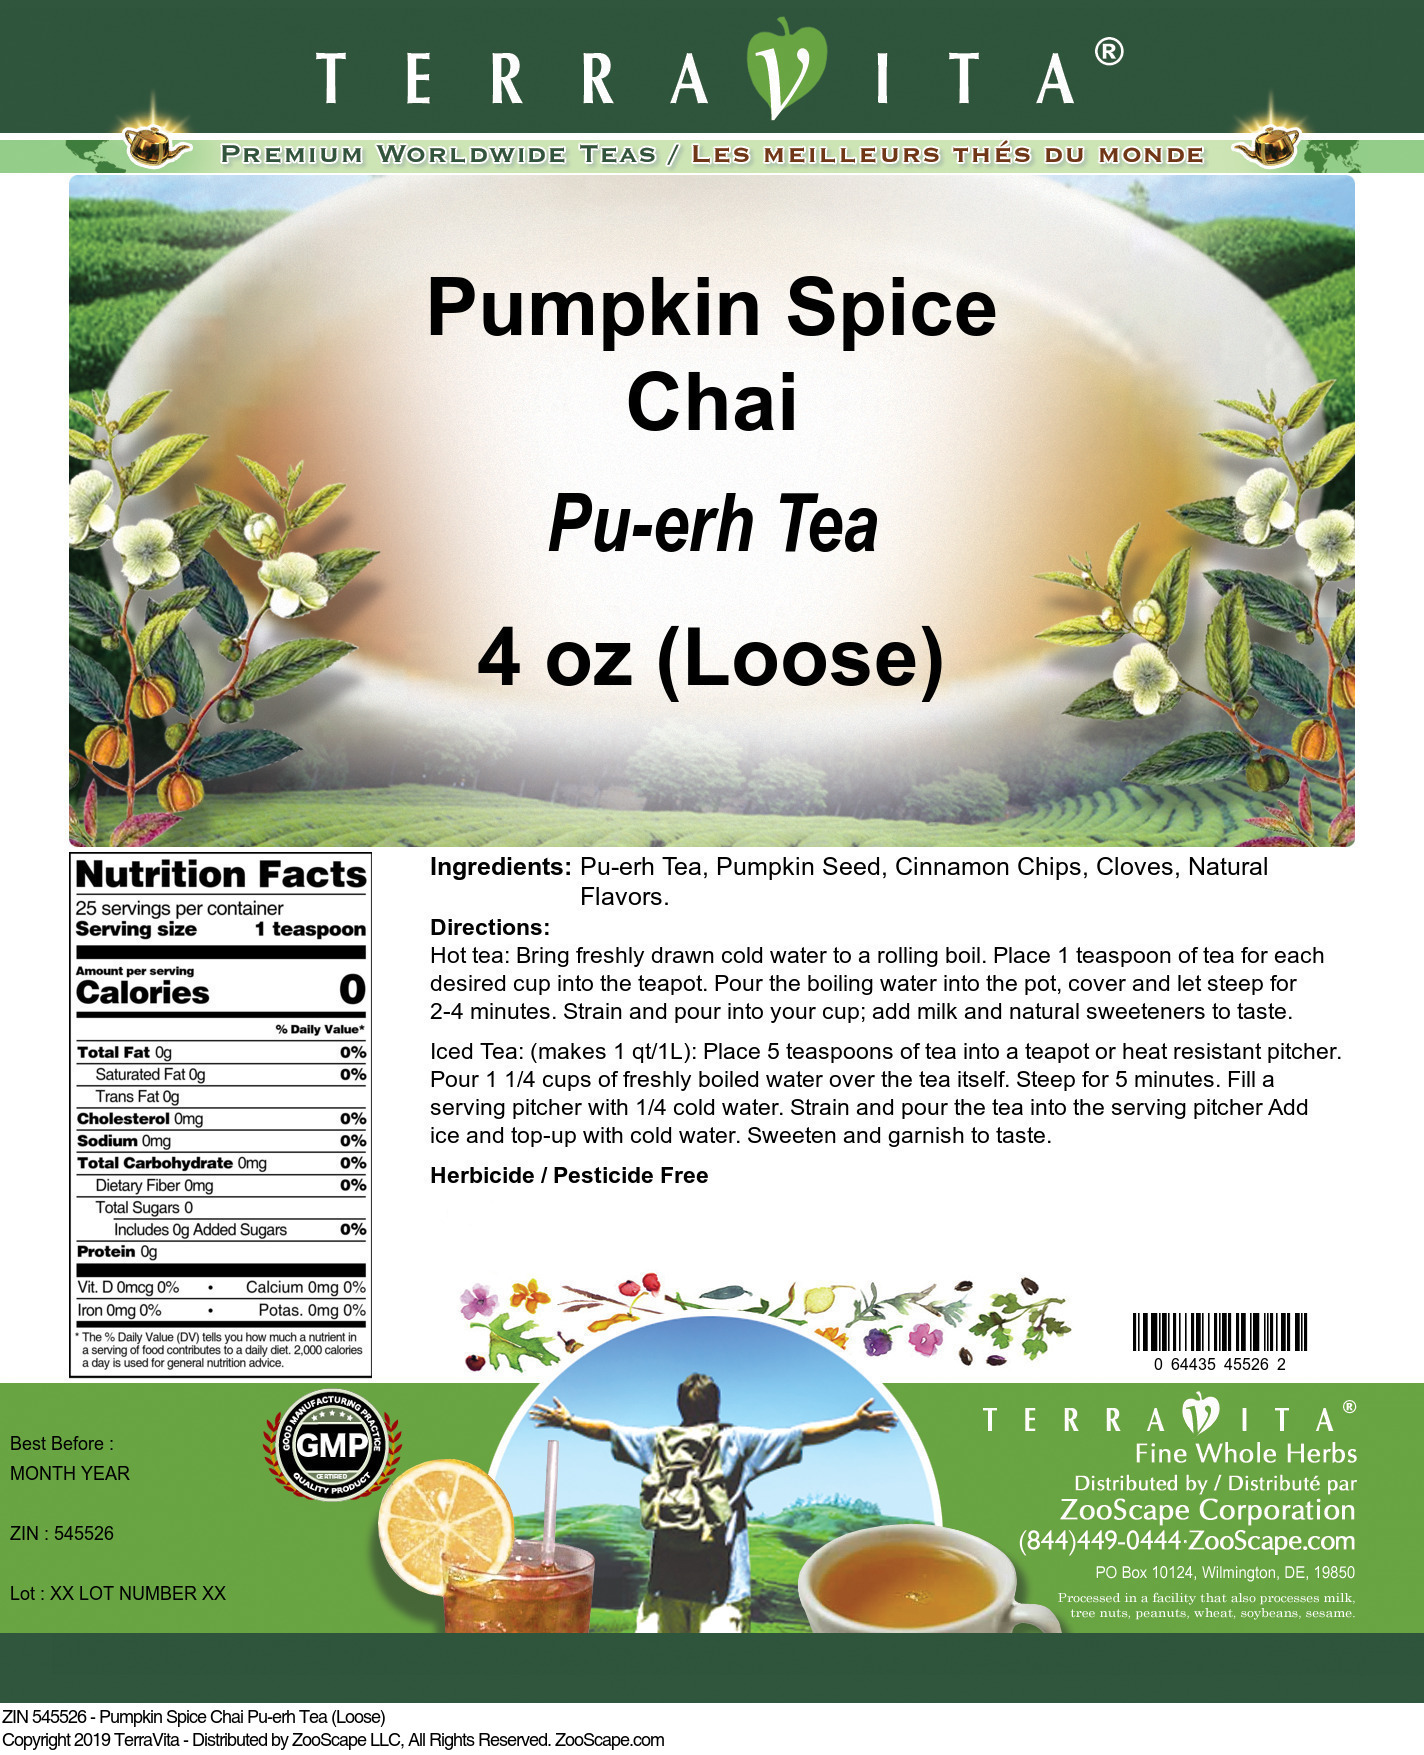 Pumpkin Spice Chai Pu-erh Tea (Loose) - Label